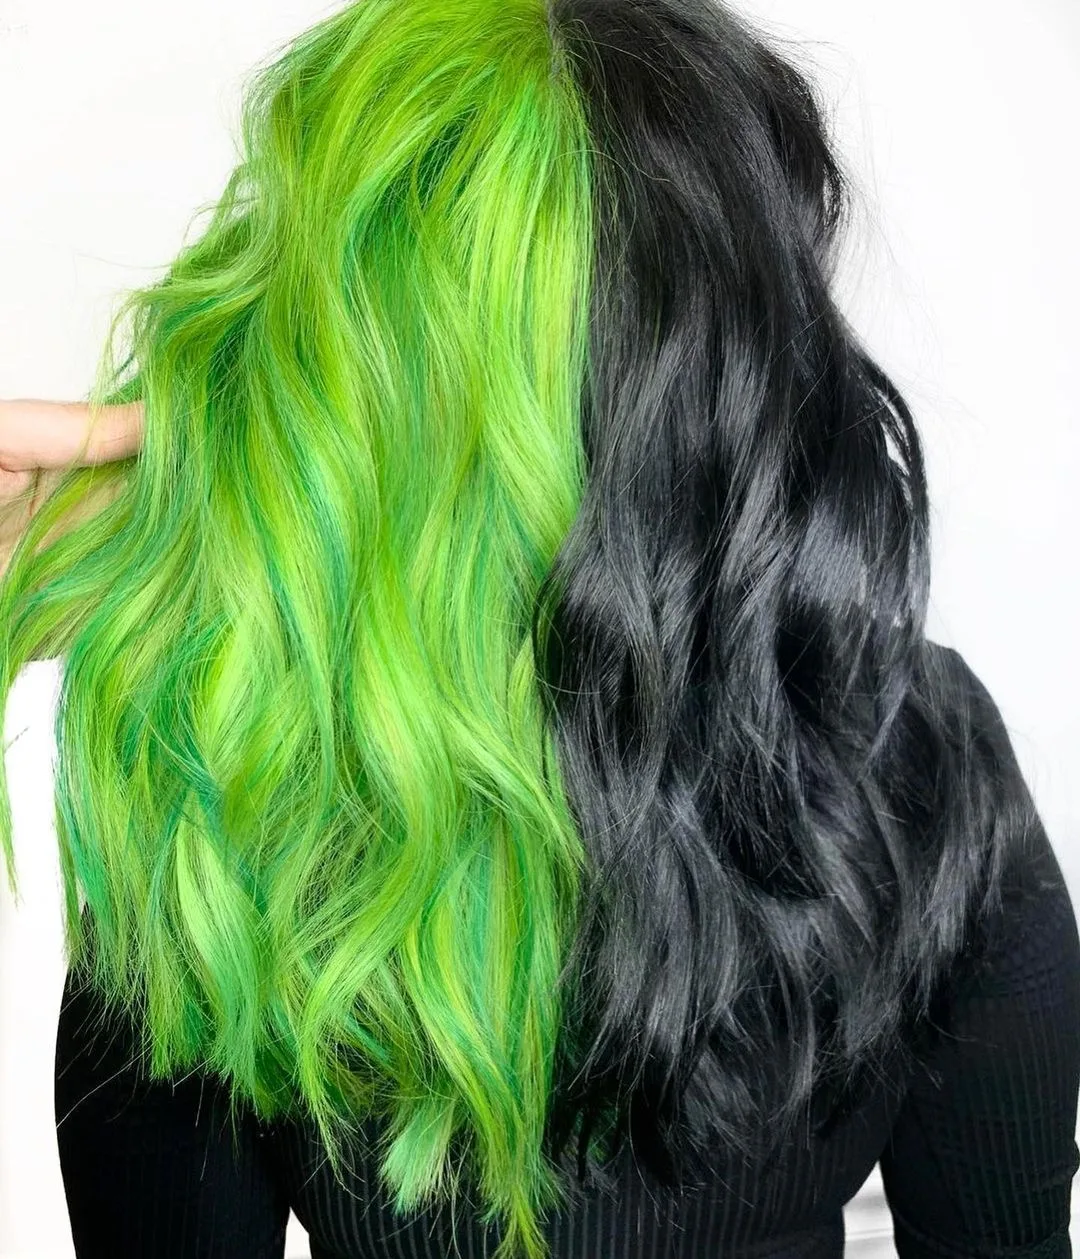 capelli neri e verdi gemelli